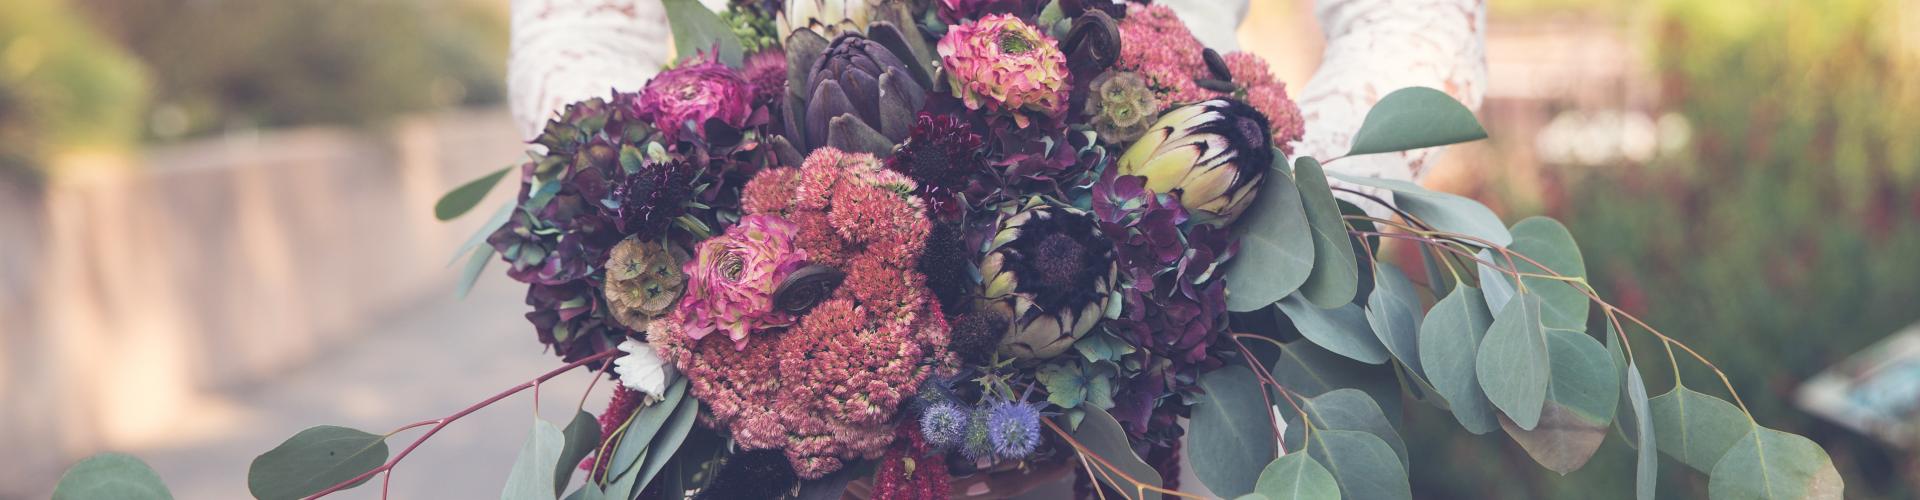 Le protea et les asters étoilés : composez des bouquets de mariée de saison